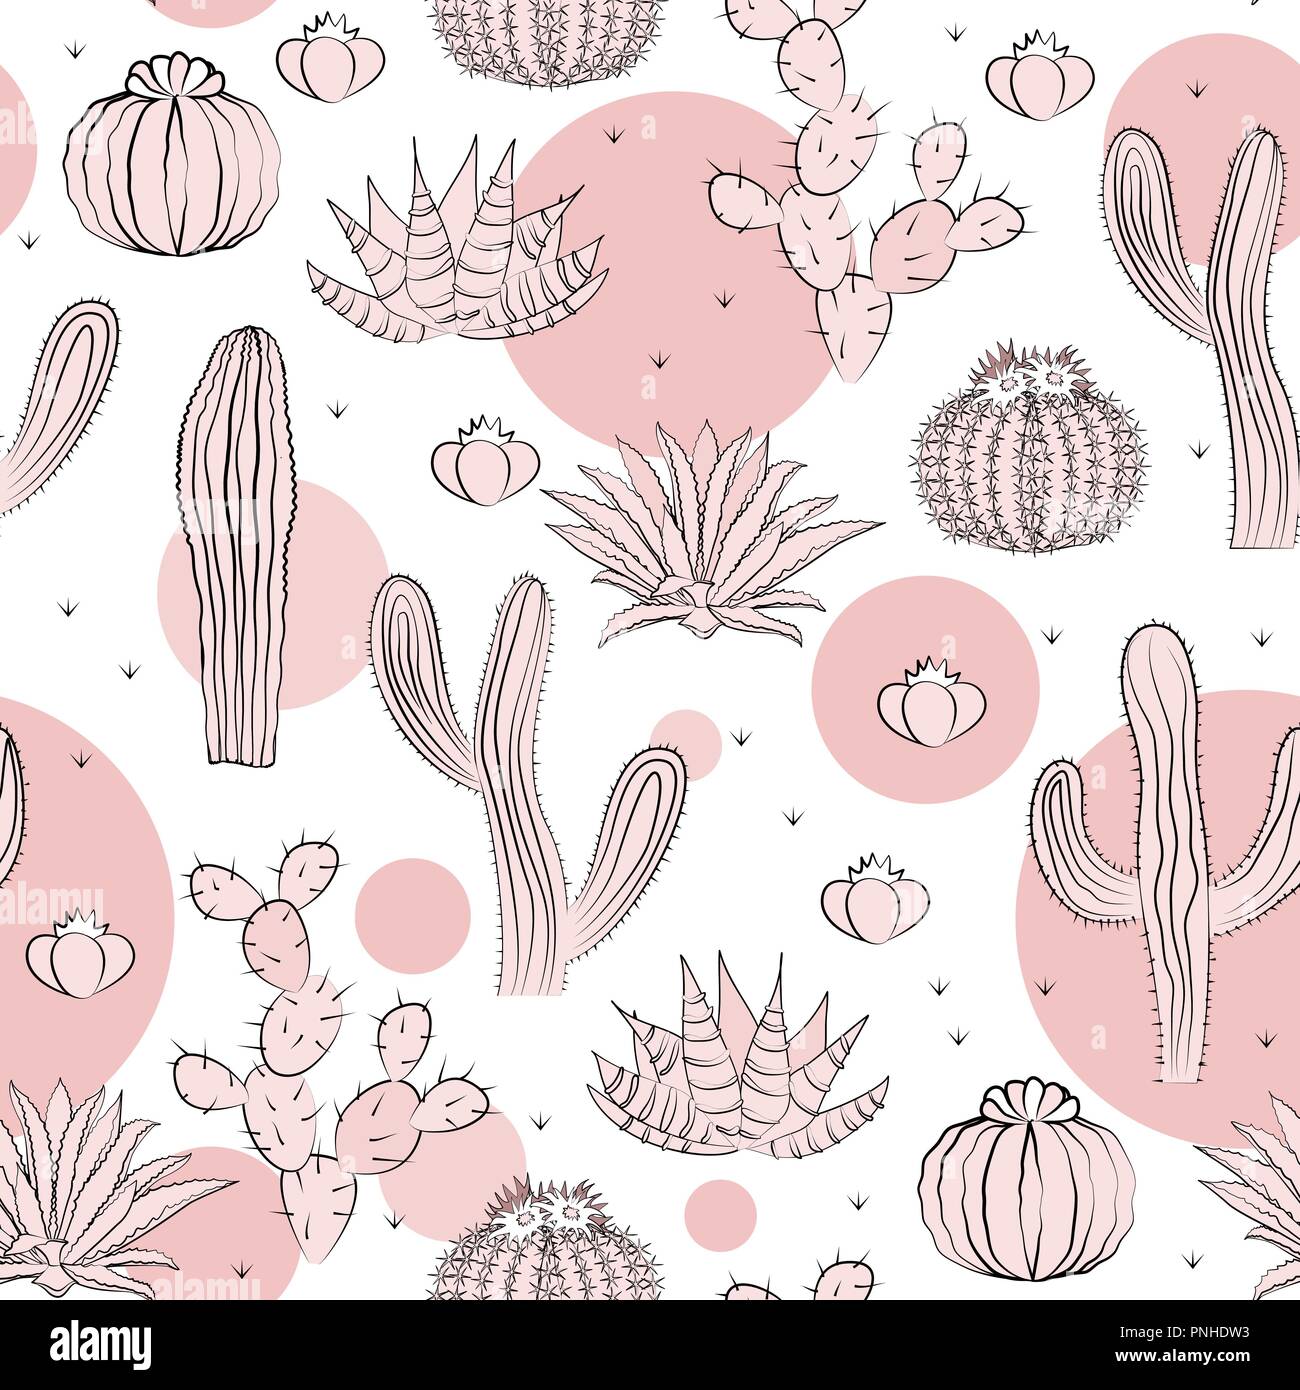 Nahtlose Muster mit Kakteen. Wild cactus Wald mit Doodle kreisen. Stilvolle Rosa, schwarze und weiße Palette. Vector Illustration Stock Vektor